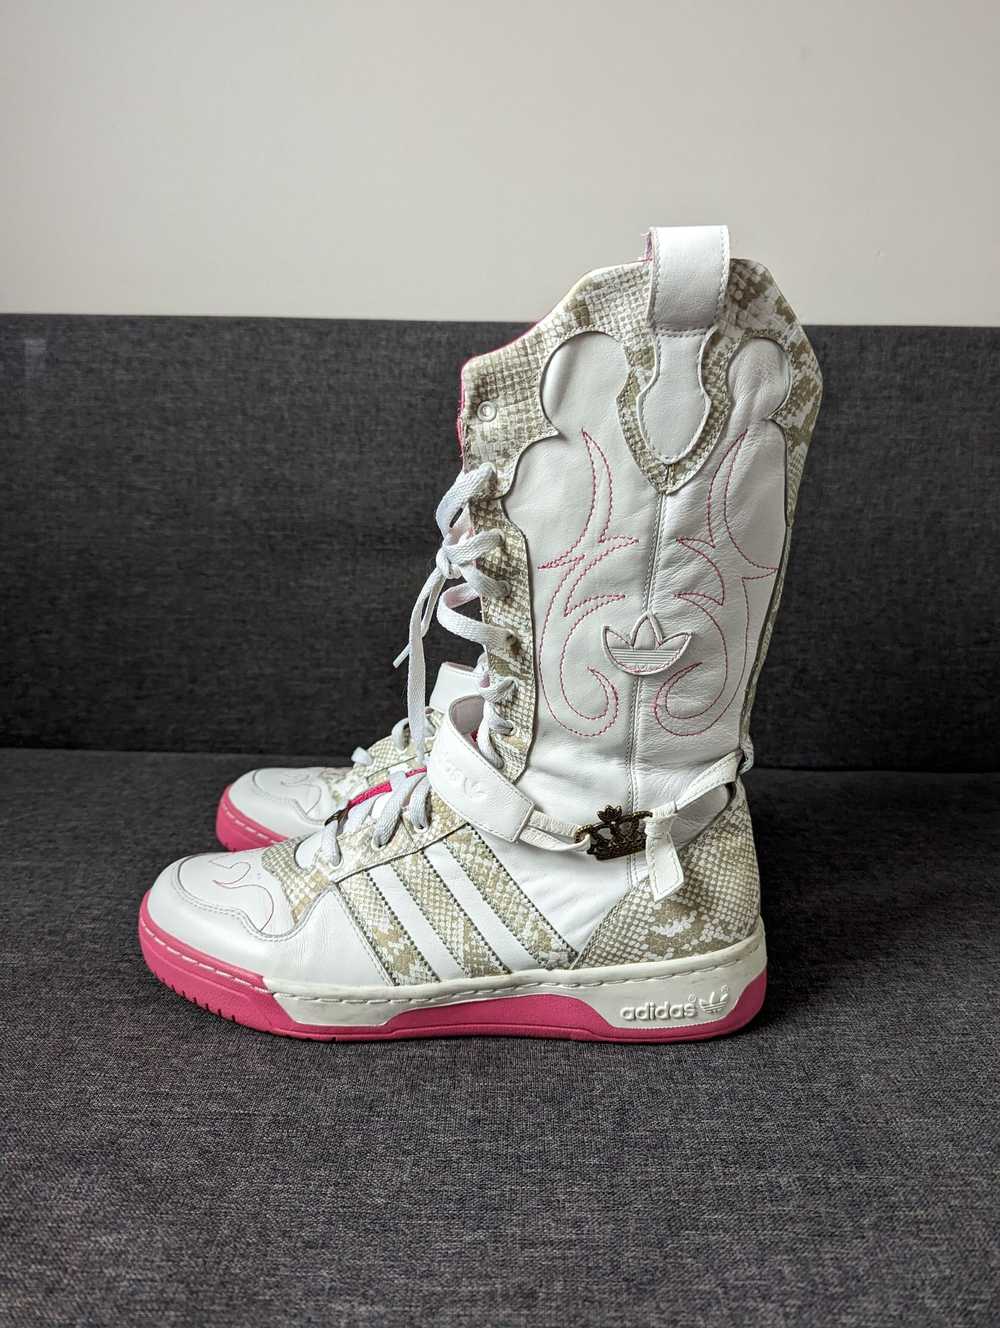 Adidas Adidas Missy Elliott Cowboy Boots - image 2